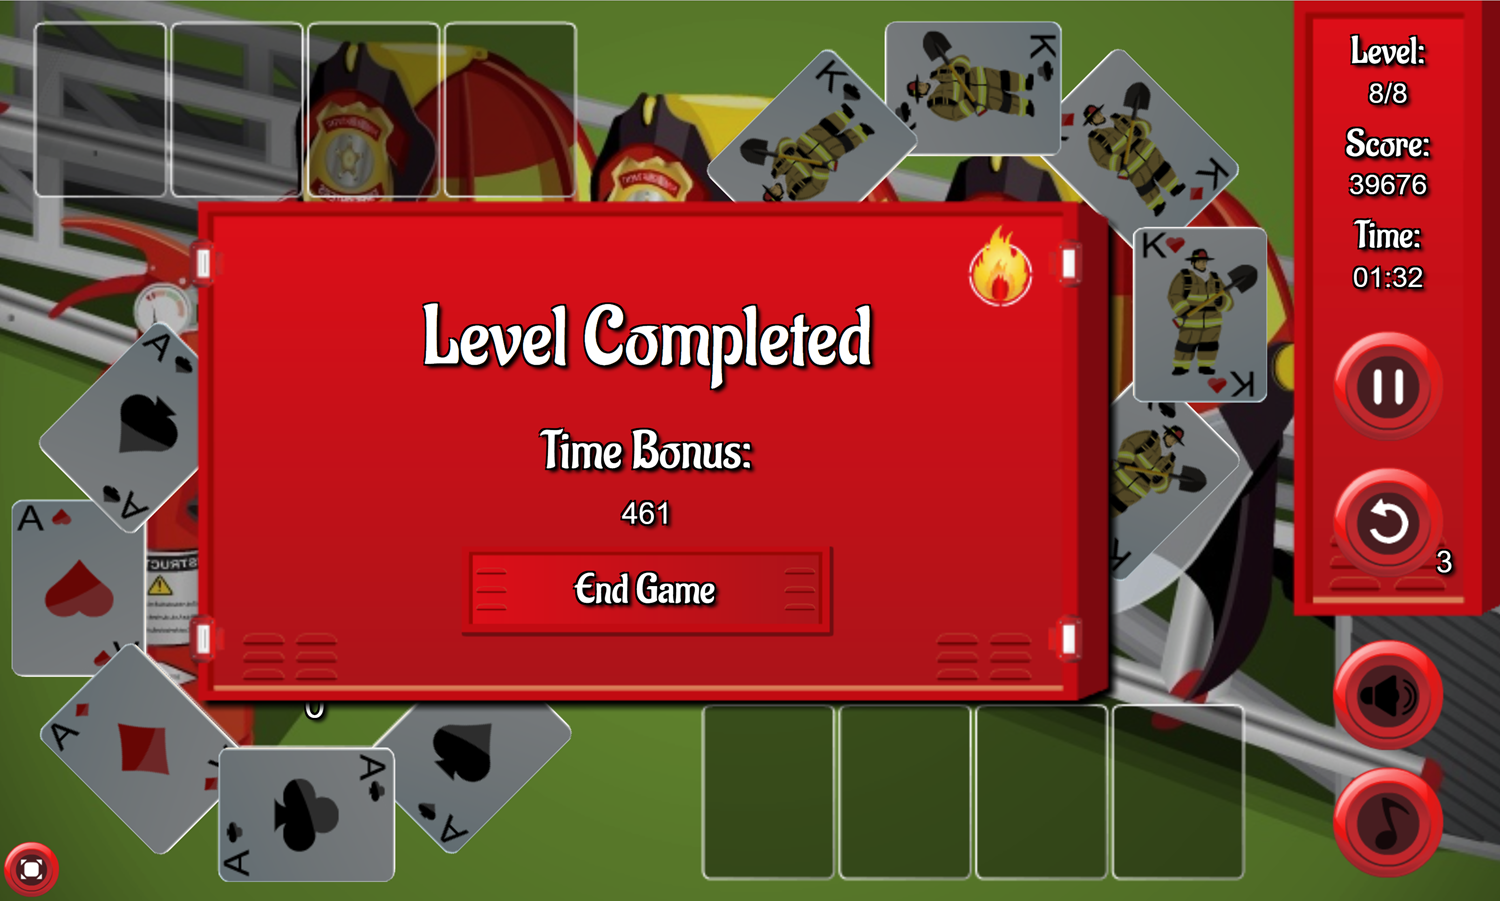 Firemen Solitaire Game Final Level Beat Screenshot.